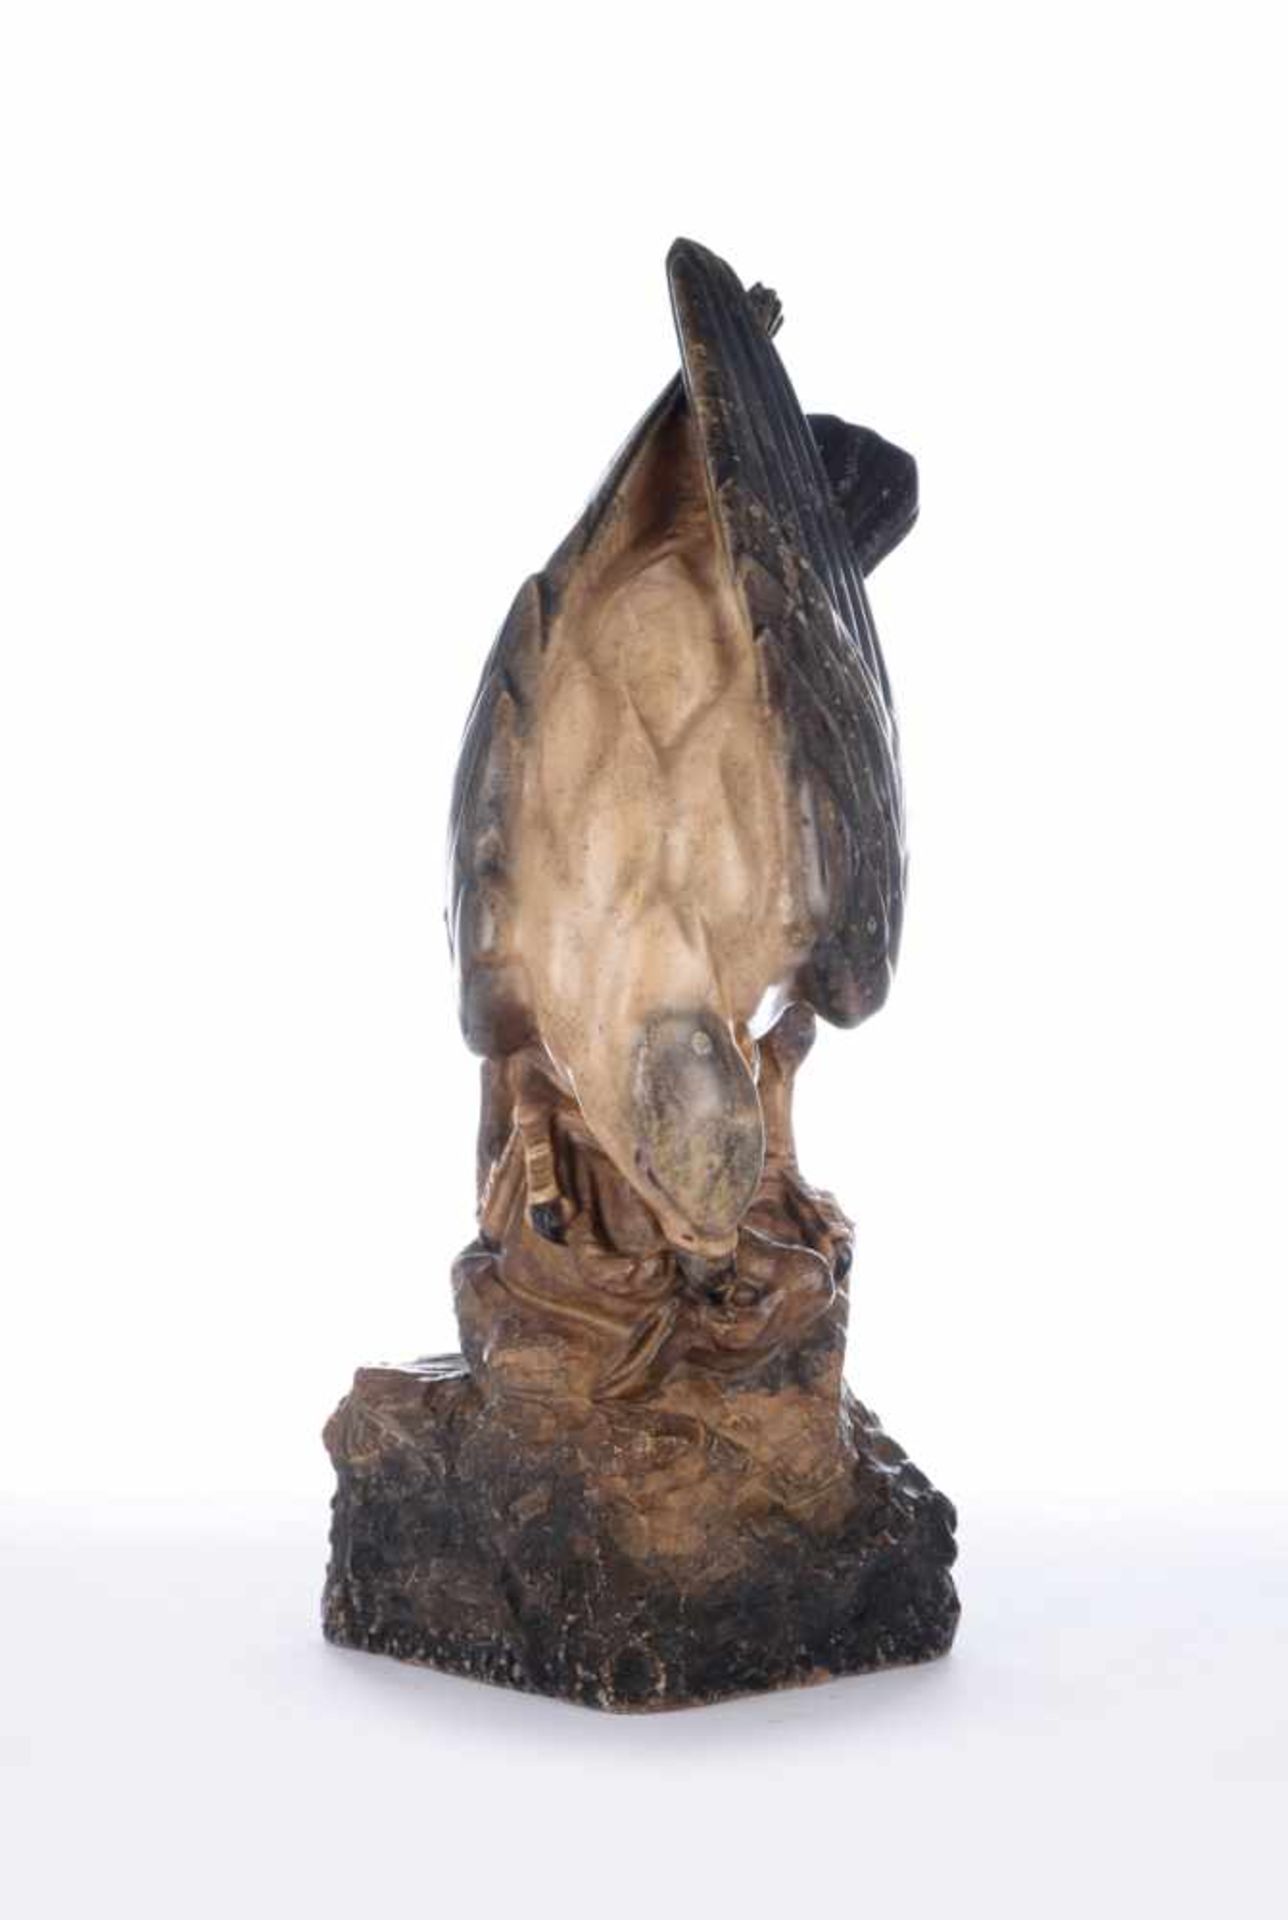 Adler reißt einen Hasen. Naturstein, marmoriert gefasst. Rückseitig signiert Kirchnersowie - Image 4 of 7